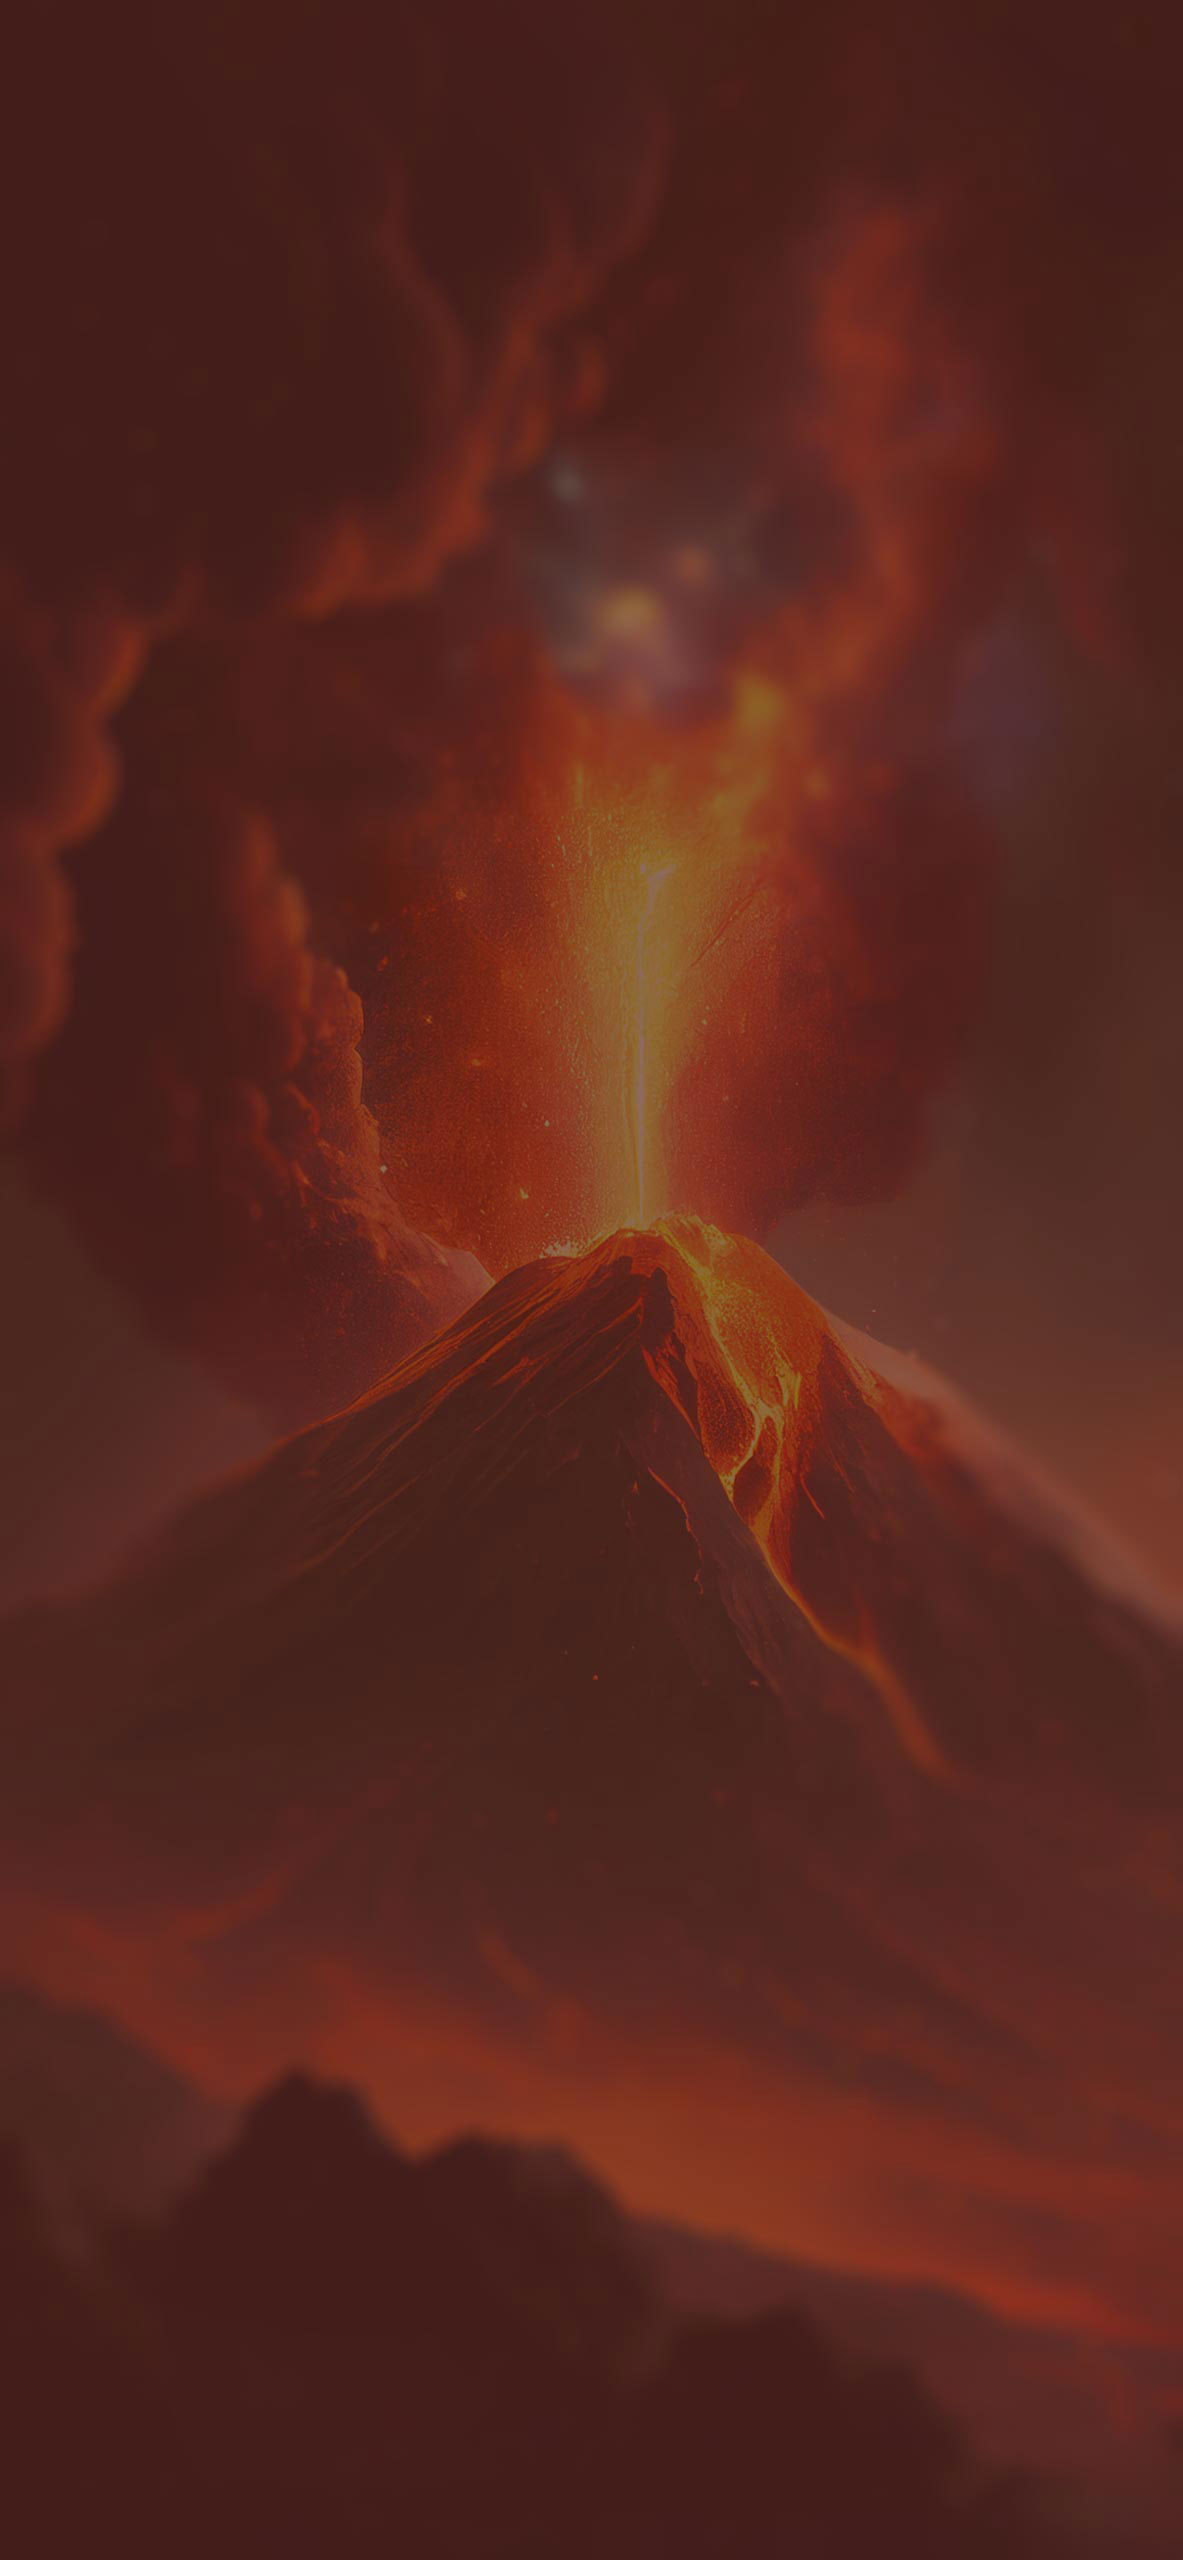 volcano eruption background